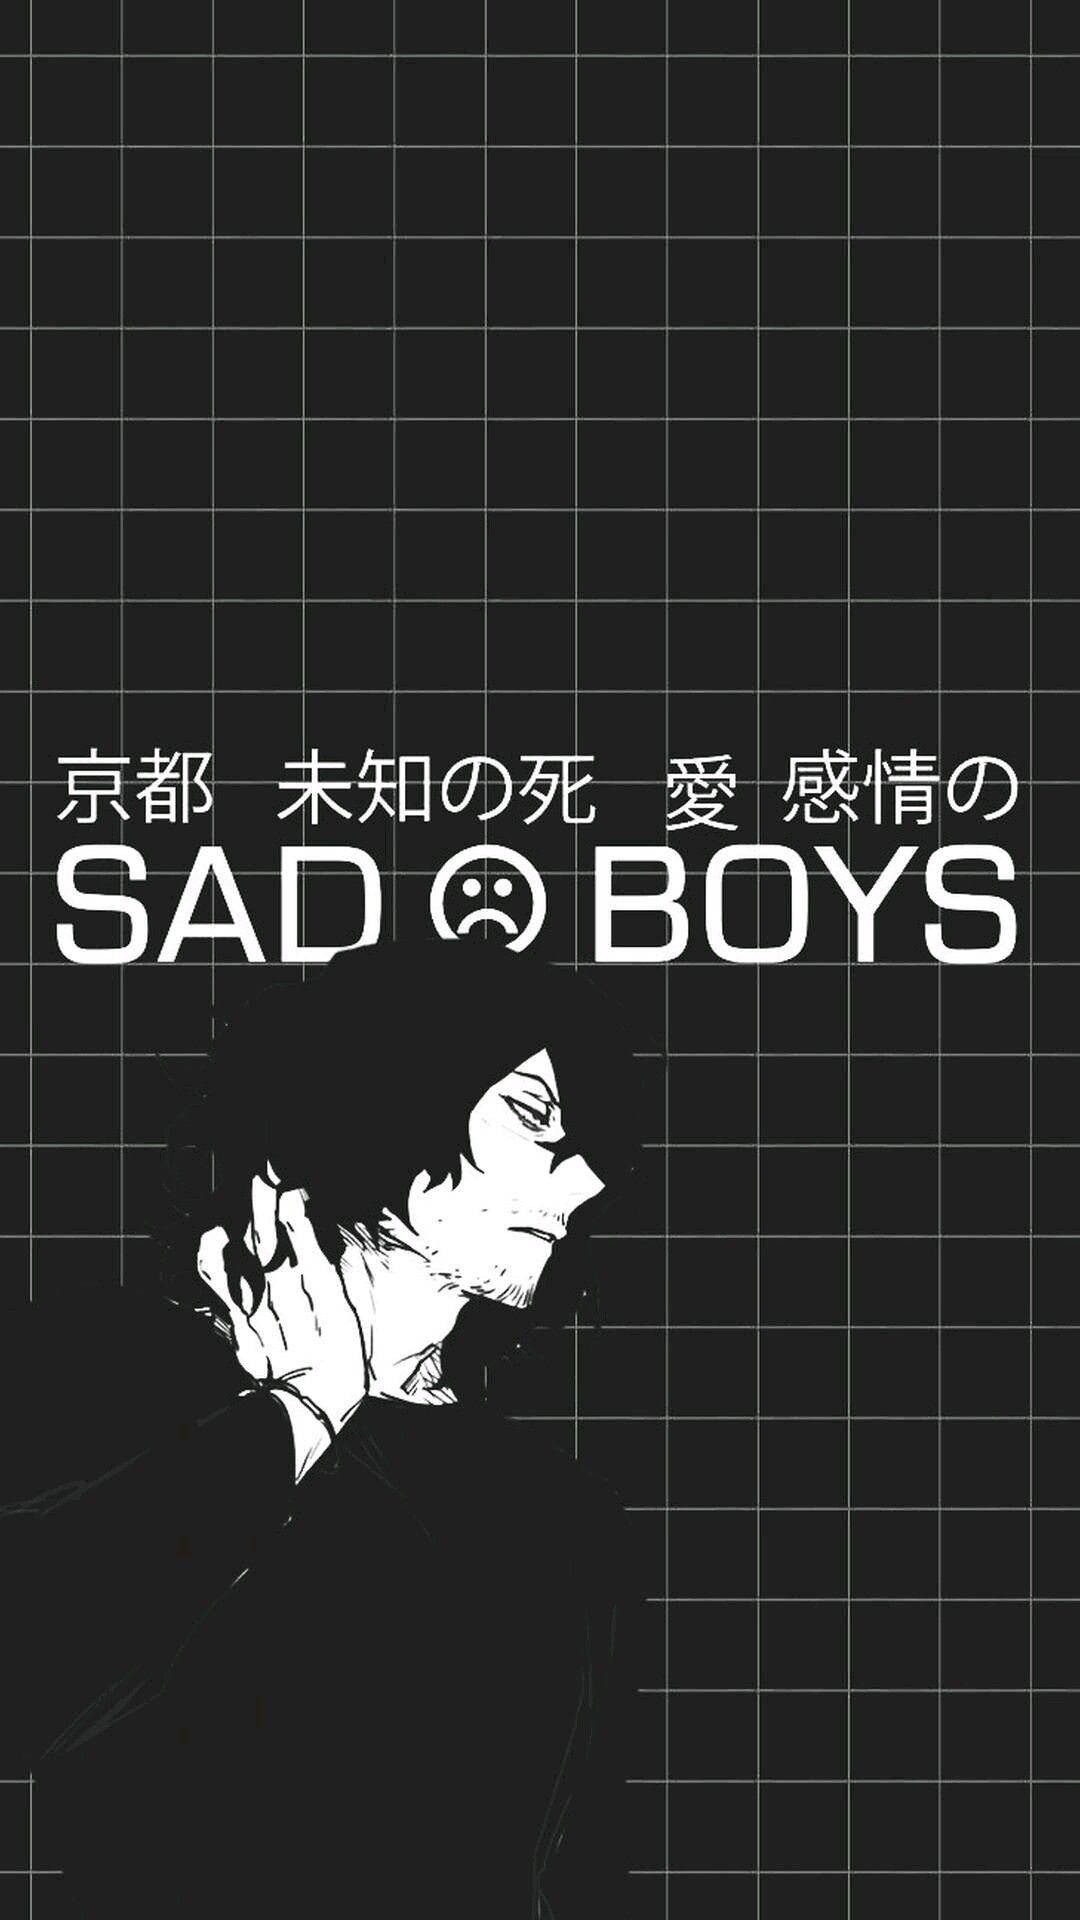 Dark Anime Aesthetic Sad Boys Background